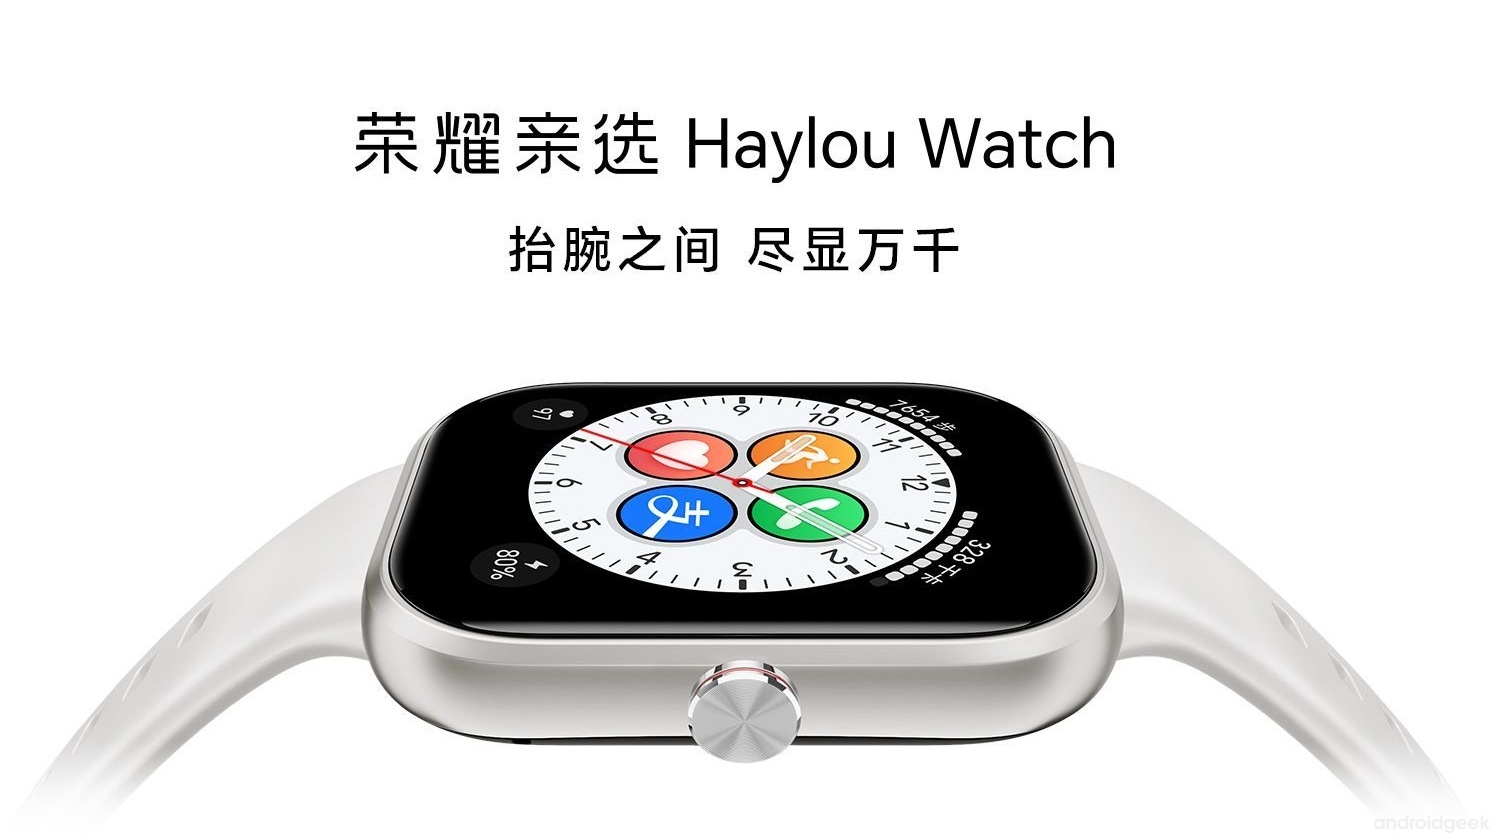 Honor Haylou Watch: O smartwatch com display AMOLED de 1.95" e chamadas Bluetooth por apenas 55 euros 19